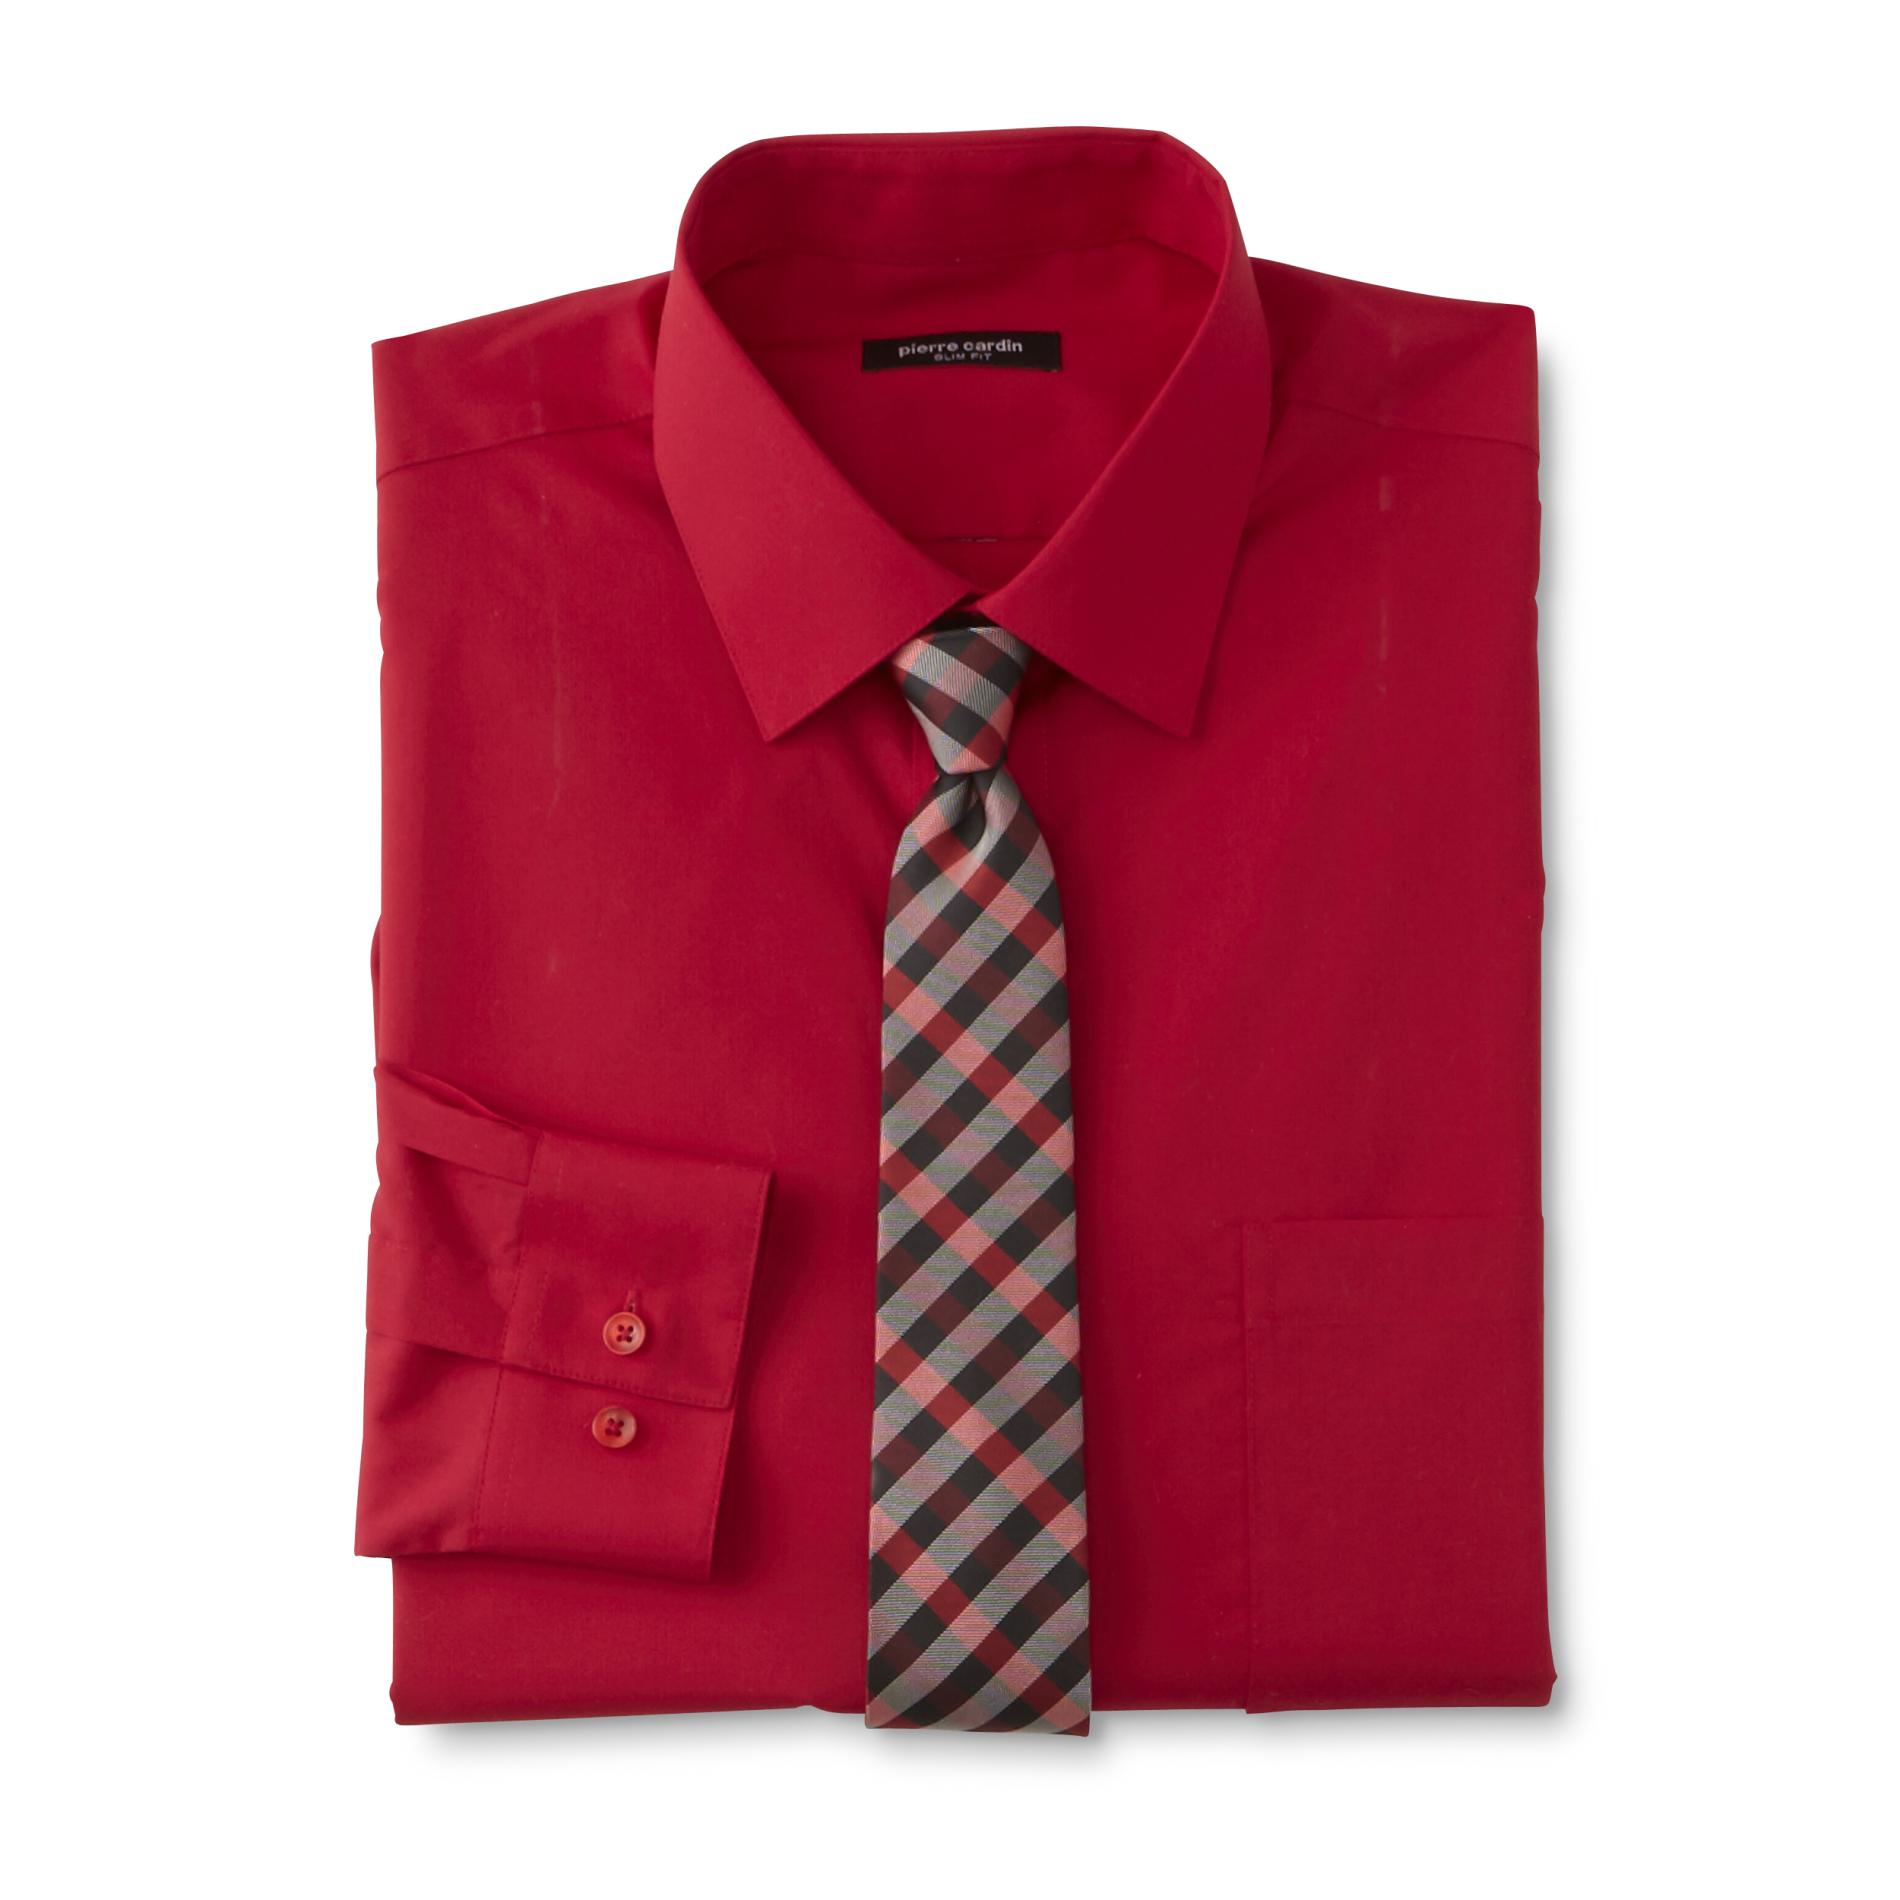 Pierre Cardin Men's Slim Fit Dress Shirt & Tie